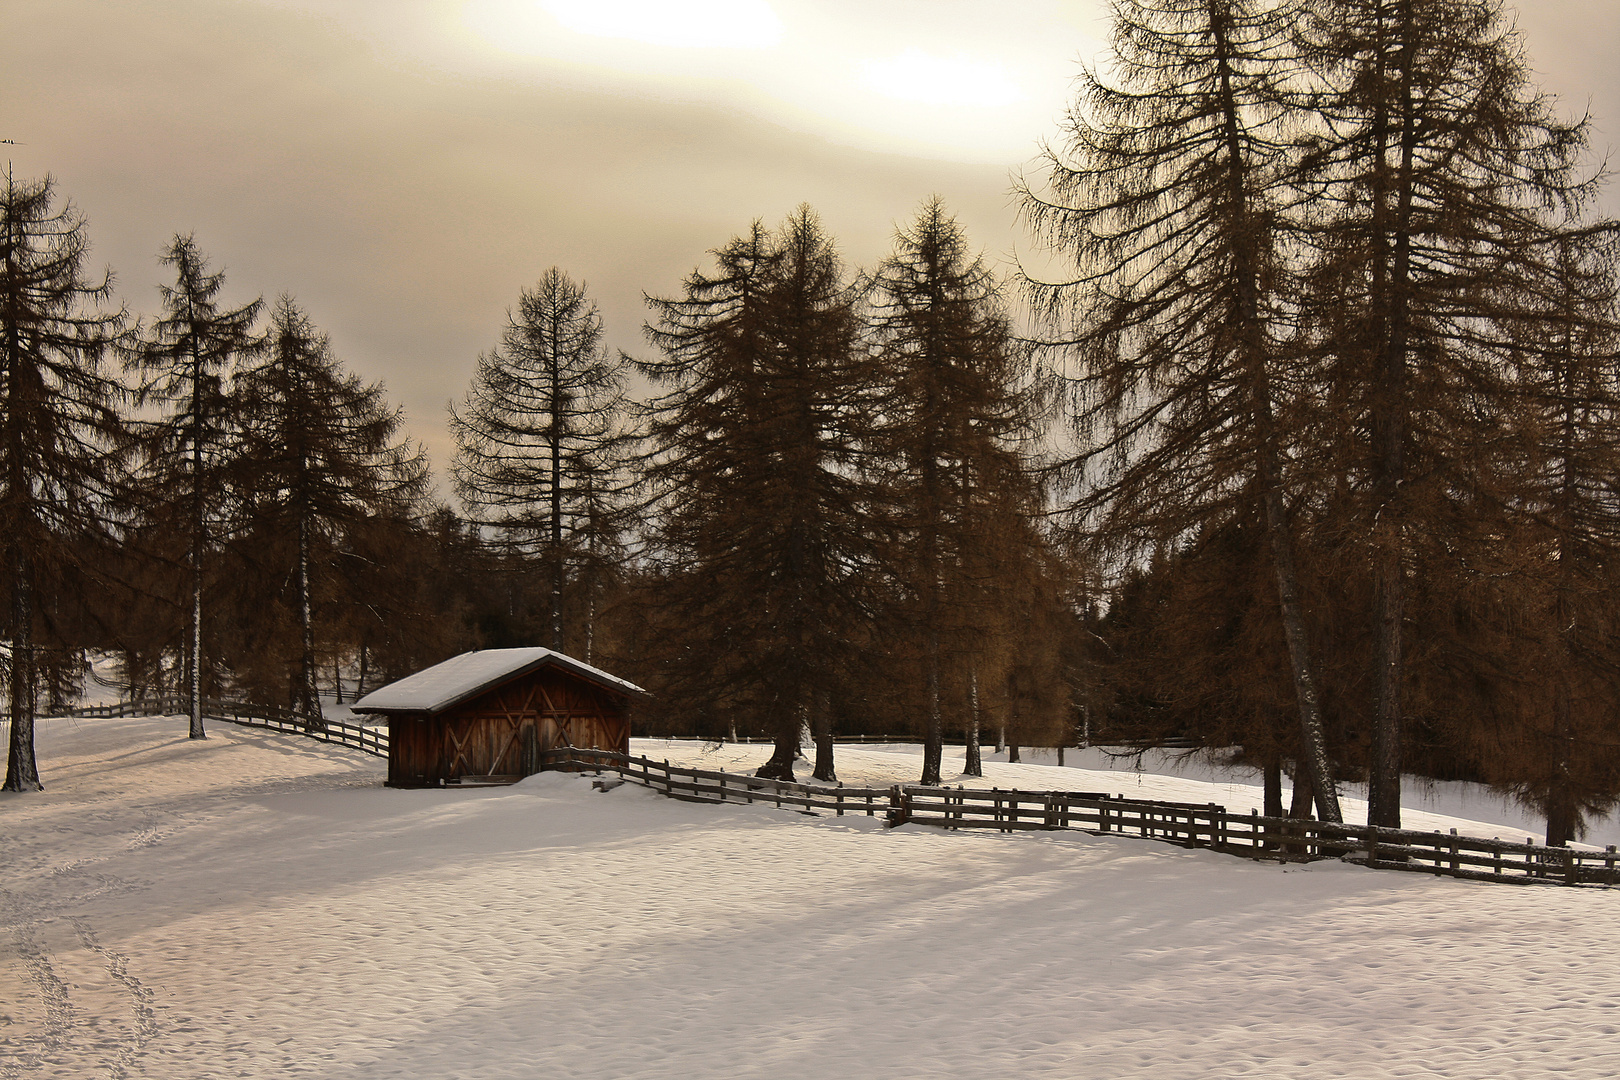 Winter in Langfenn-Südtirol